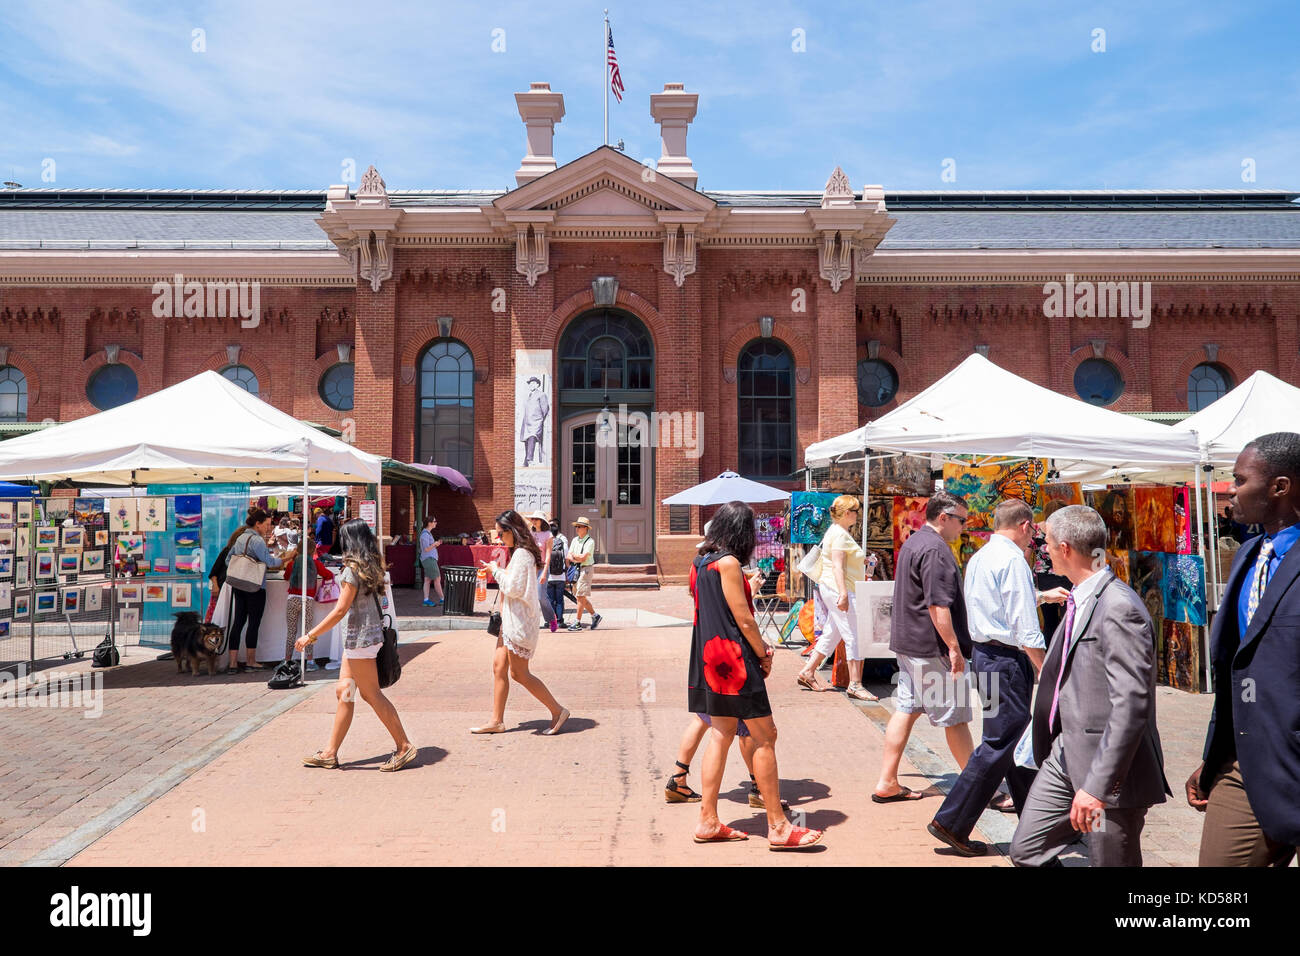 Washington DC - 24. Mai 2015: Die historischen östlichen Markt in der Capitol Hill Nachbarschaft, die erstmals in 1805 geöffnet. Ein Bauernmarkt und handwerkliche Stände ein Stockfoto